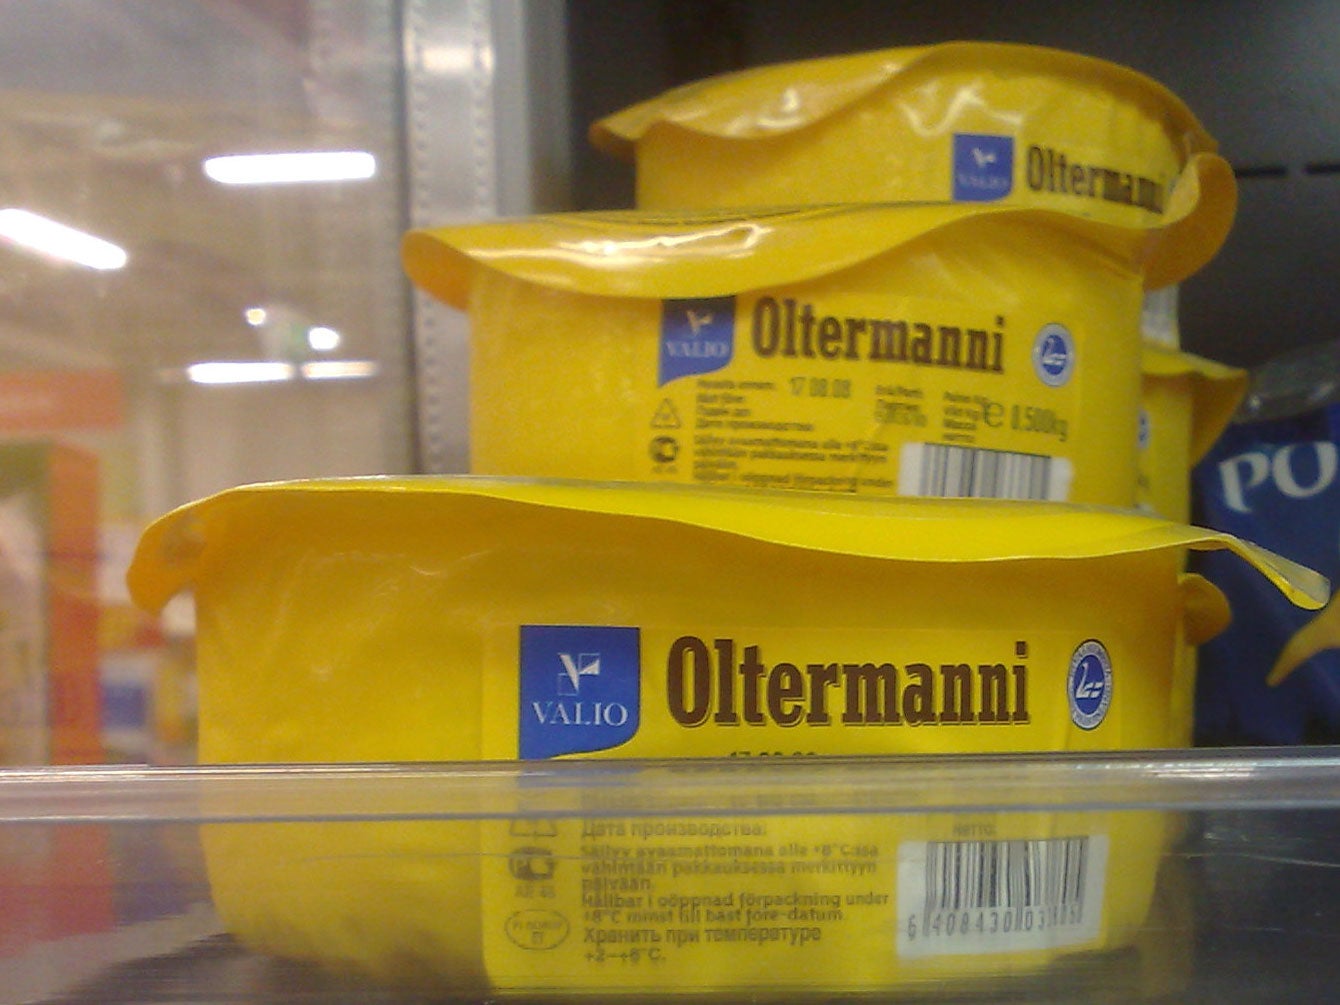 Oltermanni cheese on sale in Estonia. Picture by Ville Säävuori